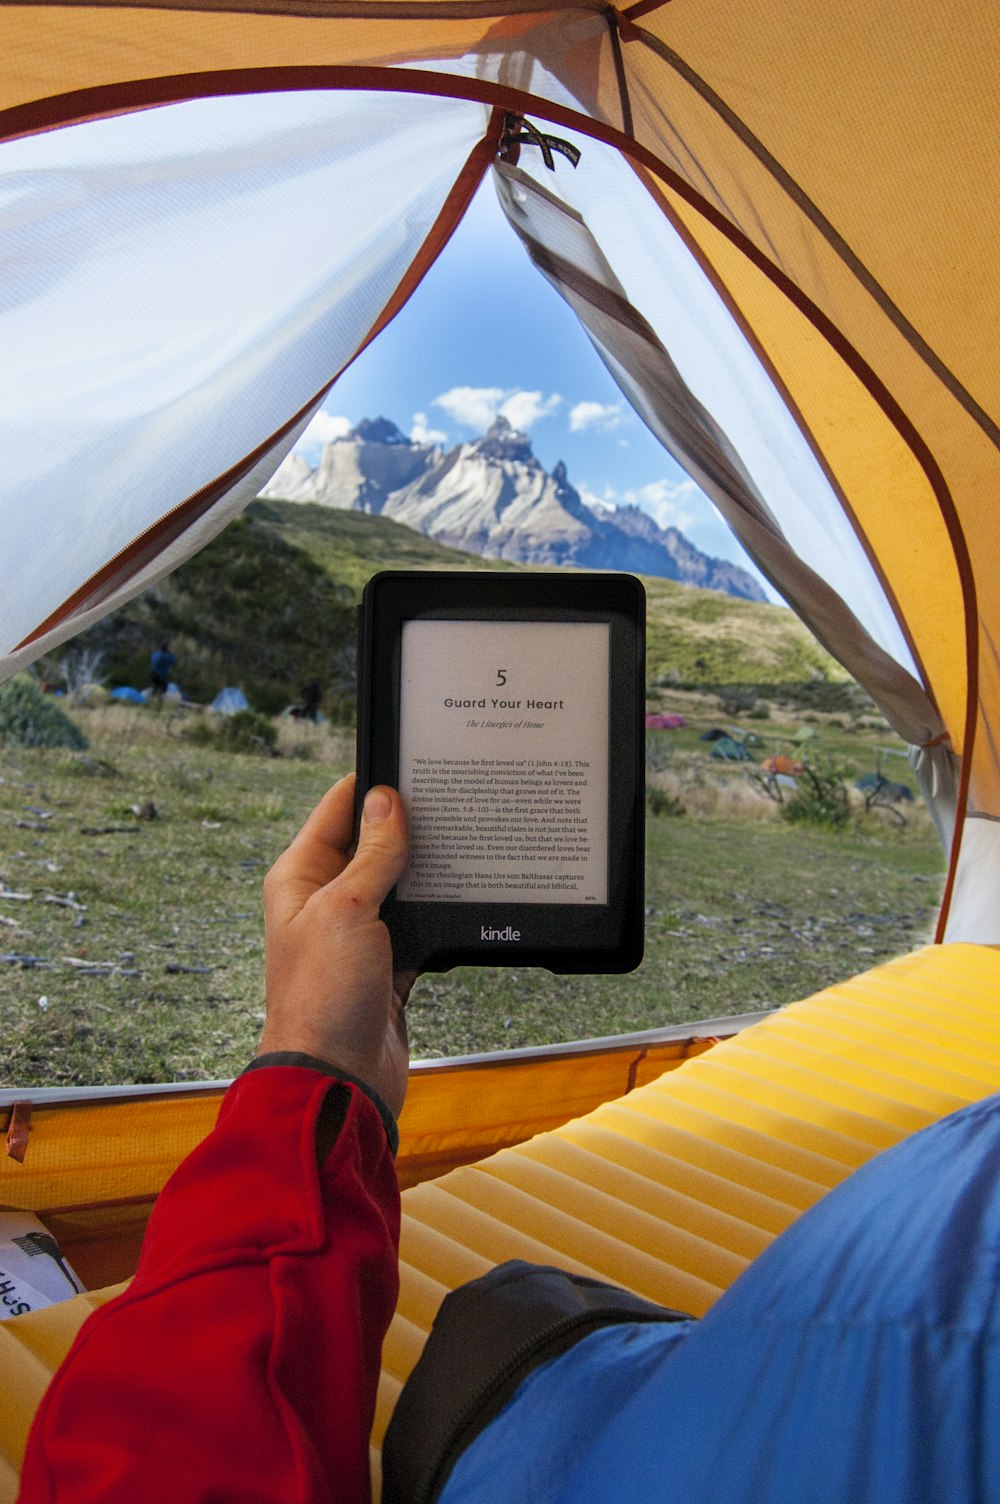 昼間、テントの中で黒いAmazon Kindle電子書籍リーダーを持っている人